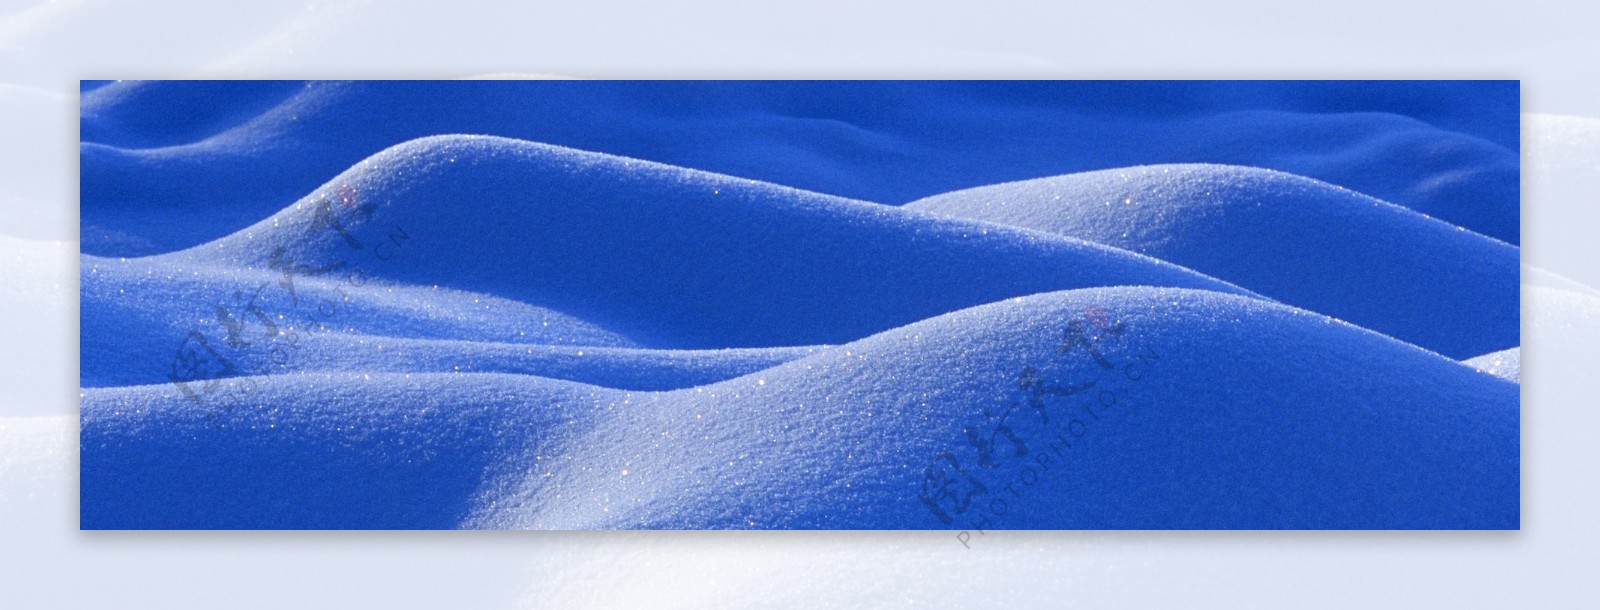 蓝色的雪1920雪景背景素材101